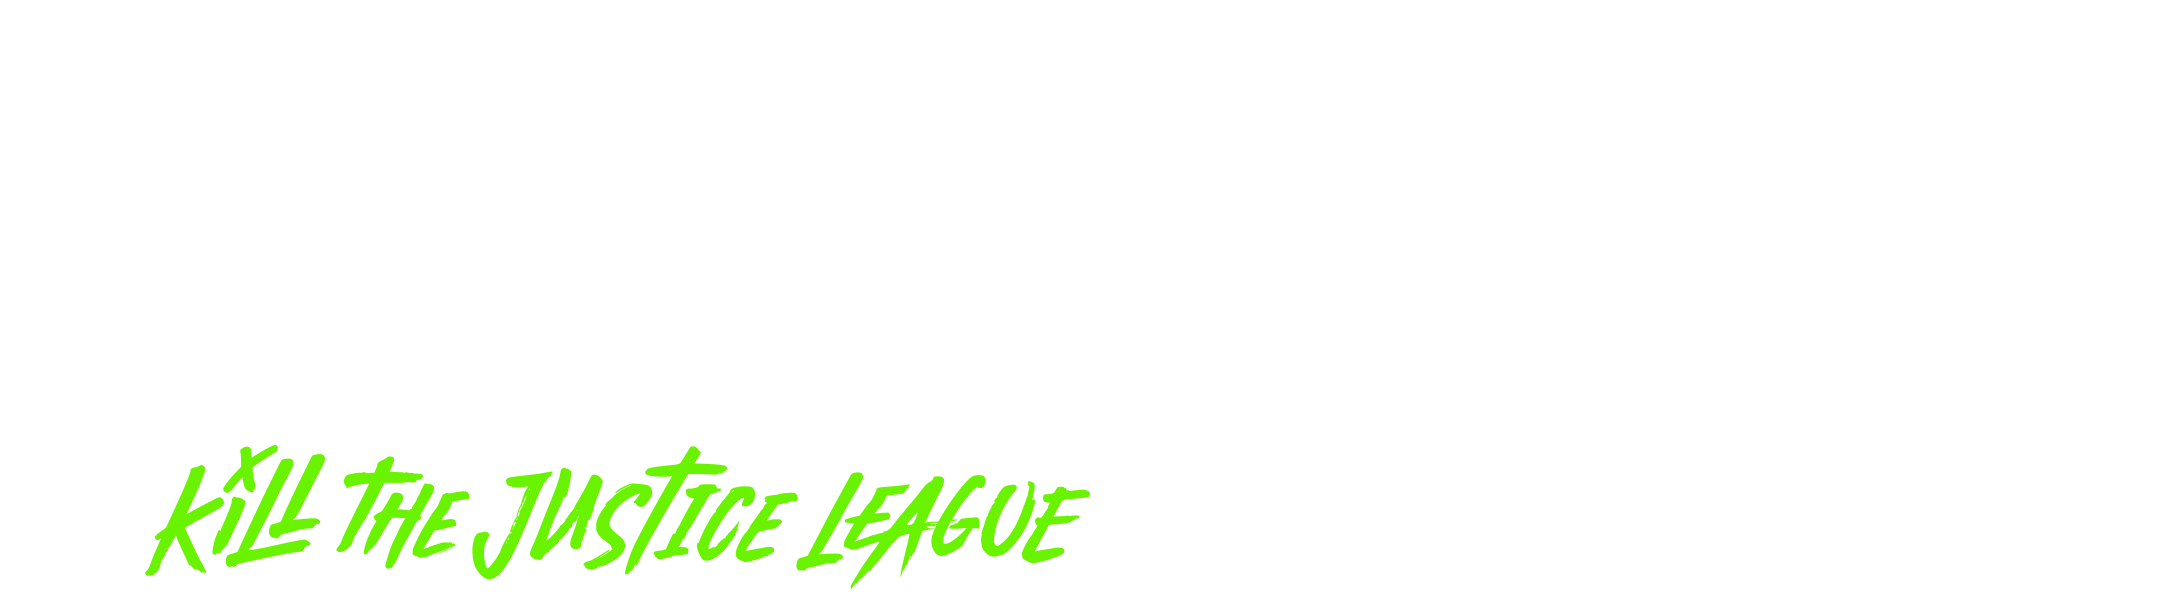 Fichier:The Suicide Squad (logo).png — Wikipédia